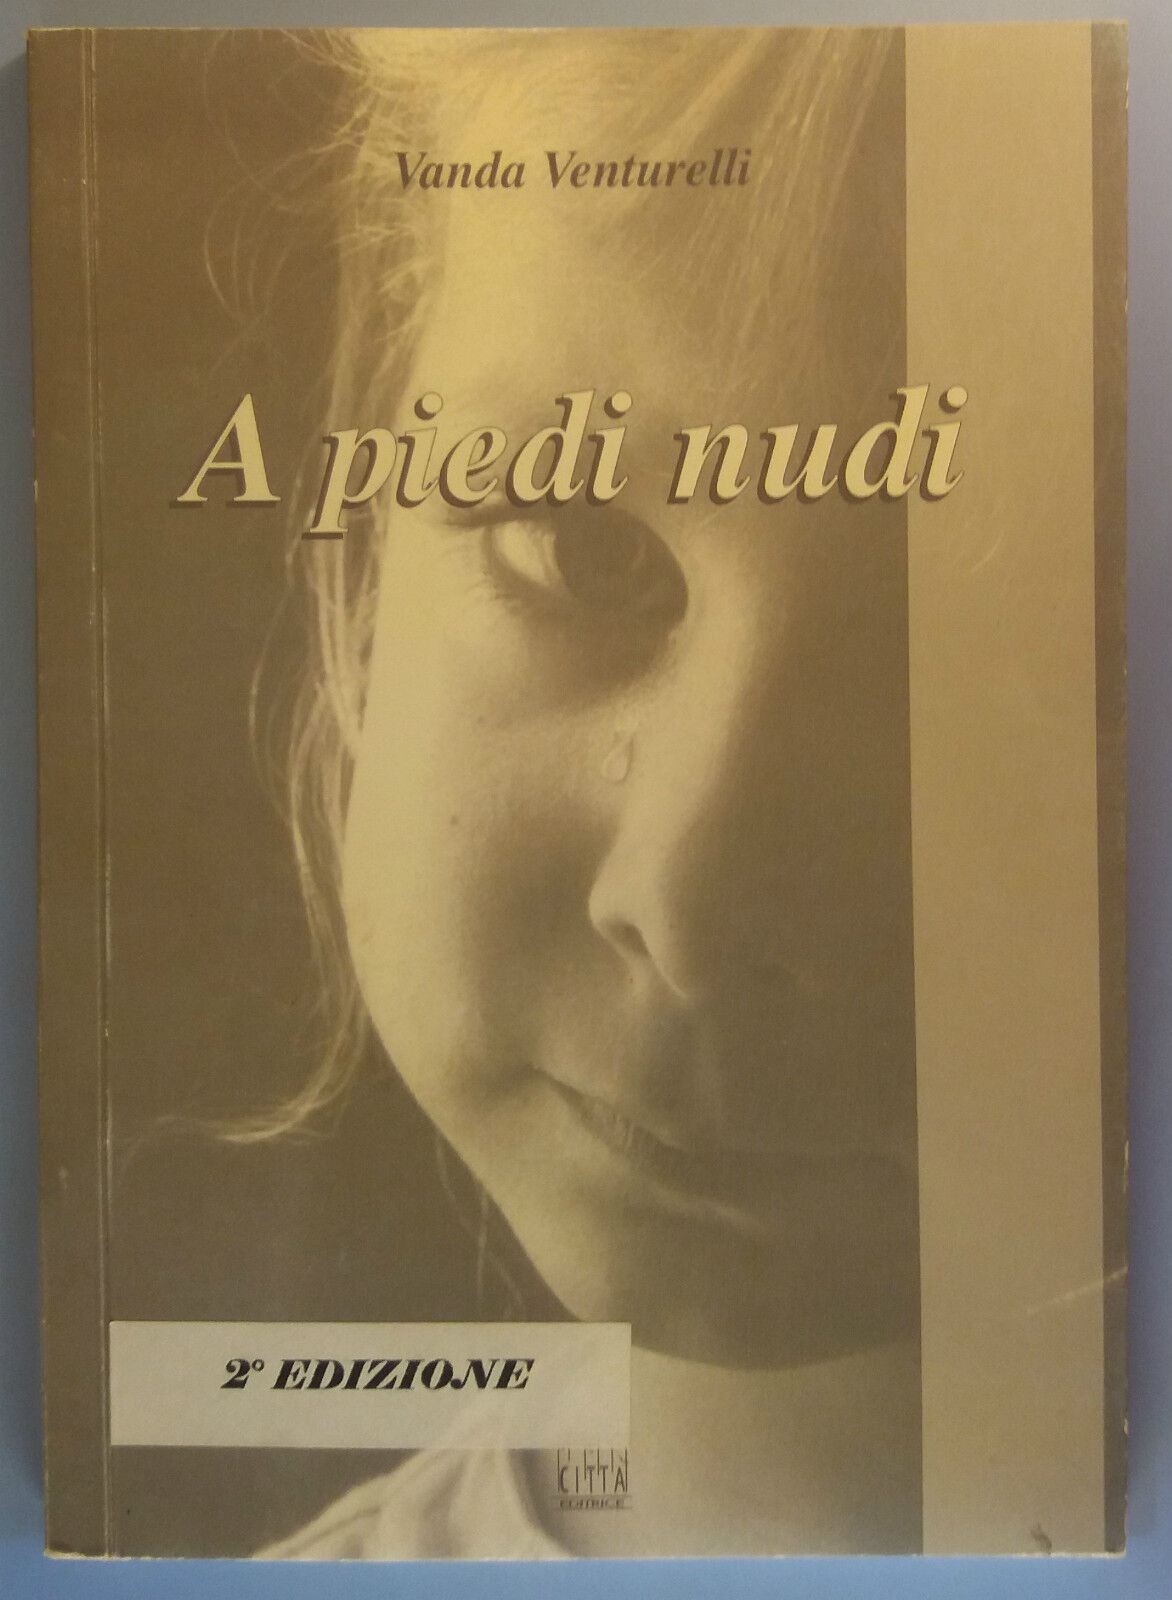 A piedi nudi - Vanda Venturelli - Citt? Editrice - 1999 - G